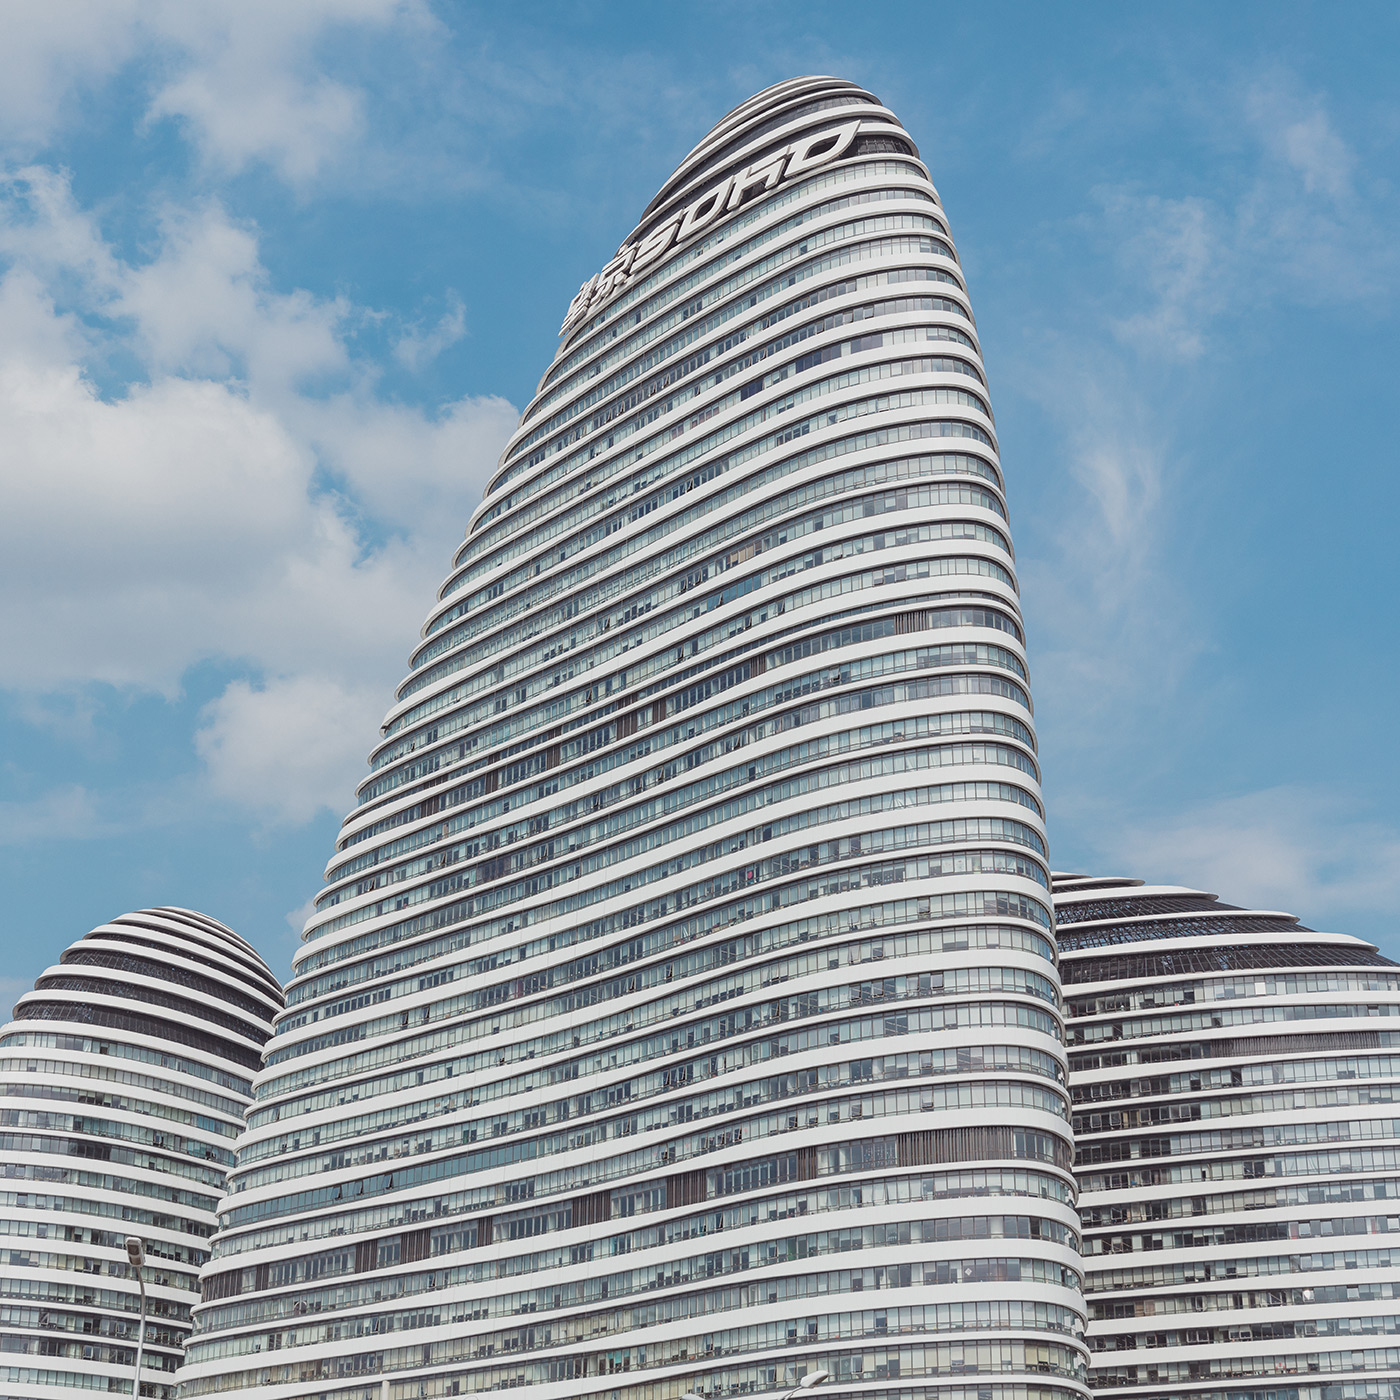 Wangjing SOHO . Location: Beijing, China . Architect: Zaha Hadid Architects